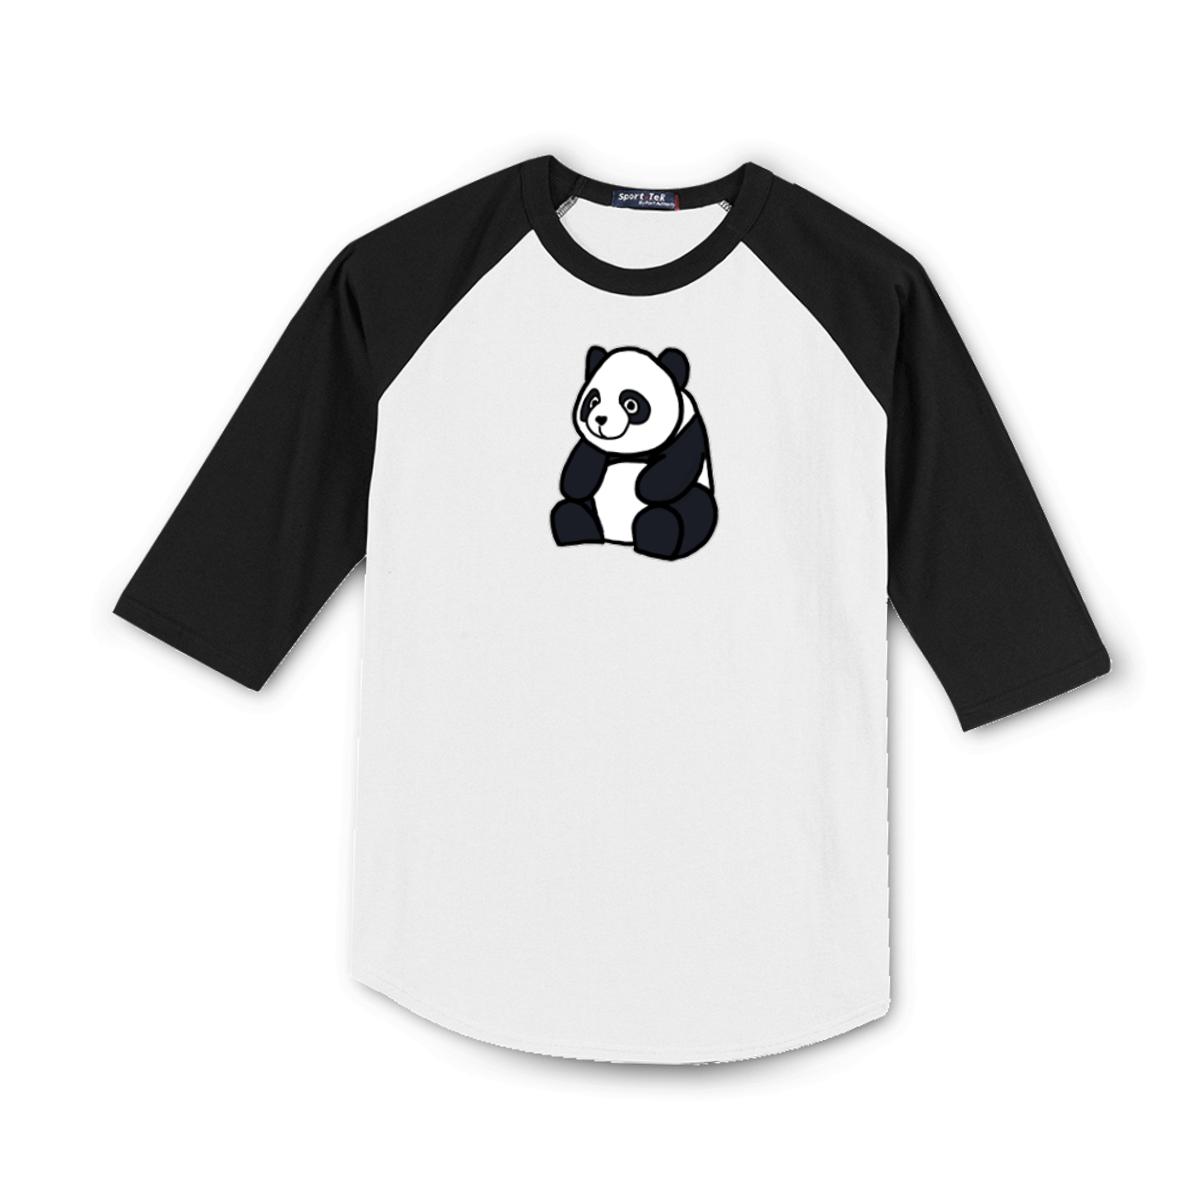 Panda Men's Raglan Tee Large white-black